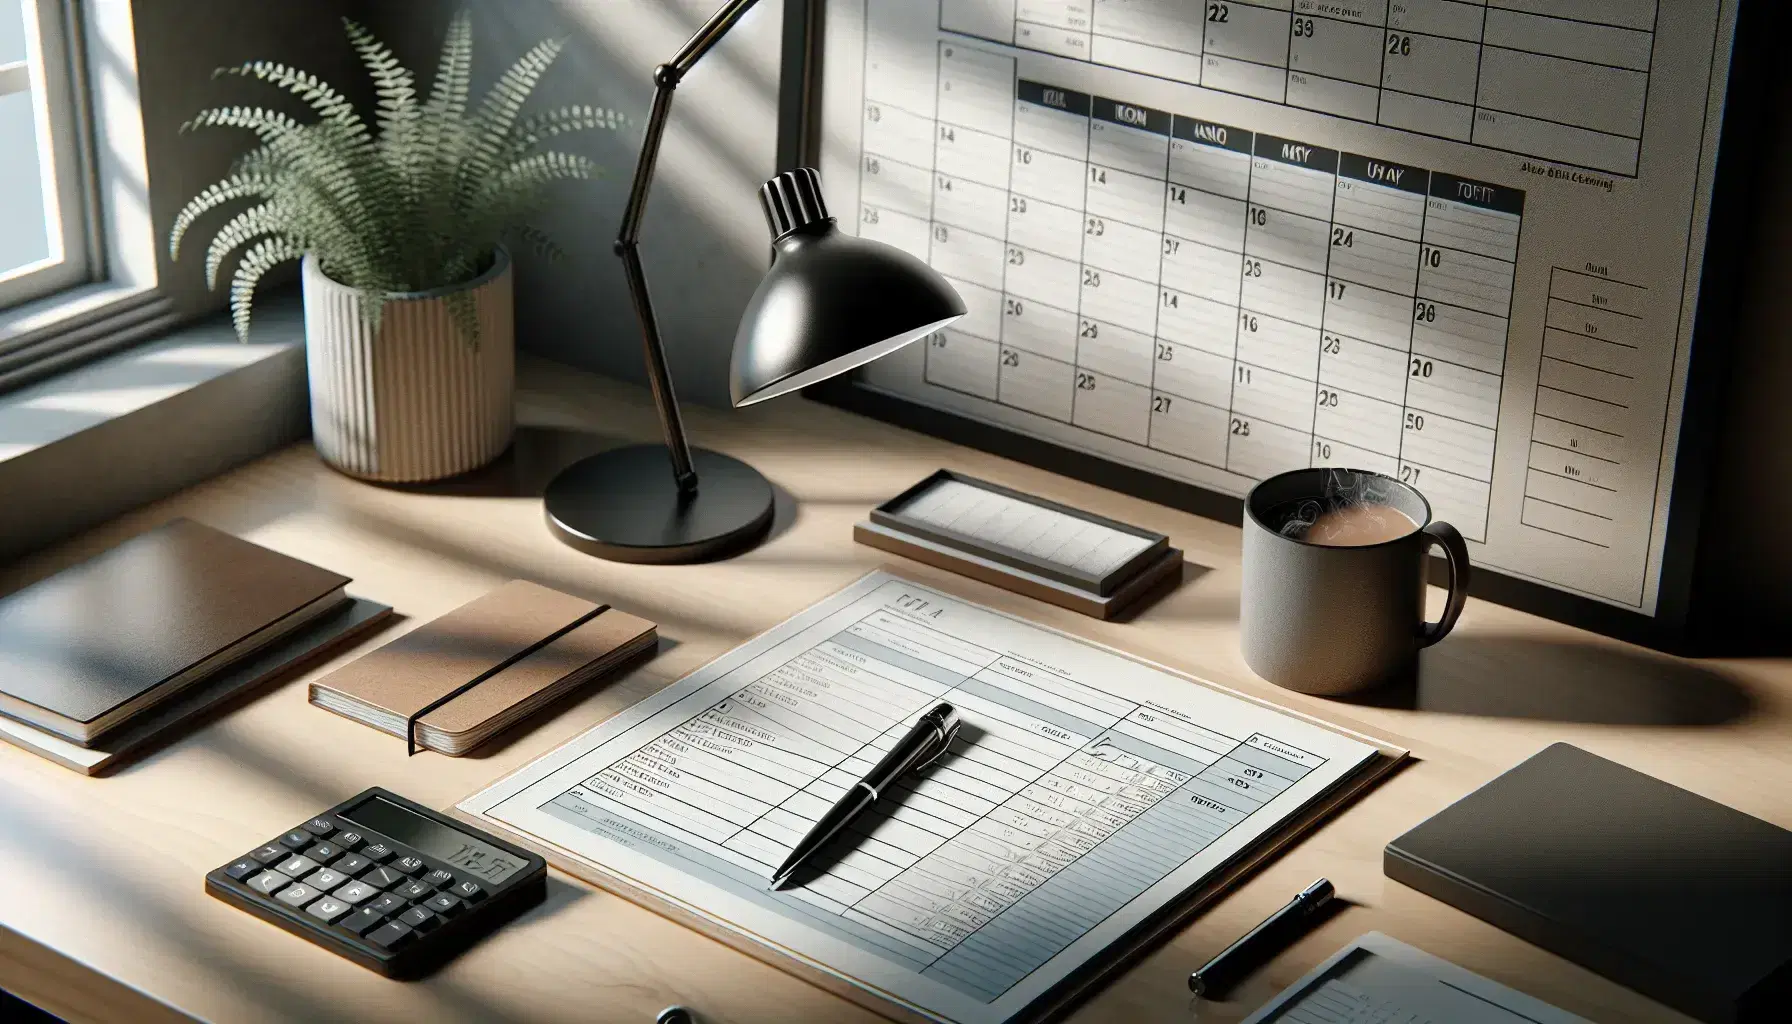 Escritorio de oficina con elementos de planificación como bloc de notas, calendario, calculadora y taza de café, junto a una planta y una lámpara apagada.